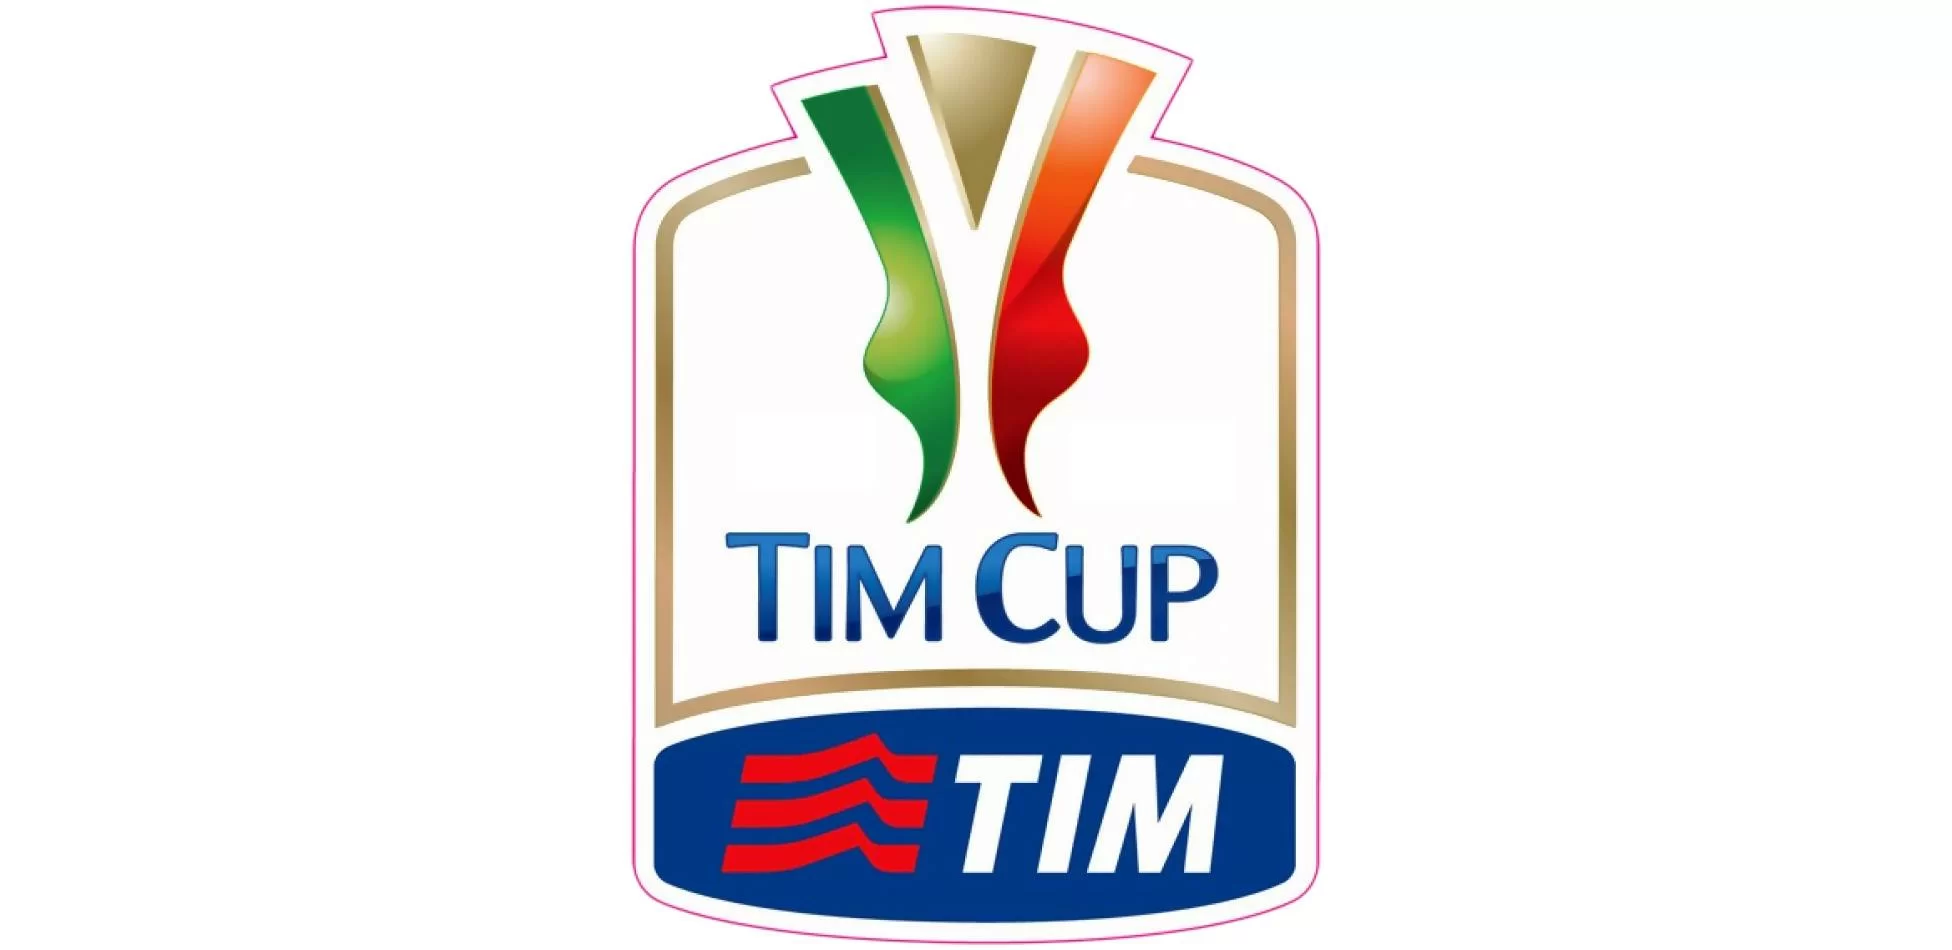 Semifinali Coppa Italia, altro pareggio: finisce 3-3 tra Fiorentina e Atalanta